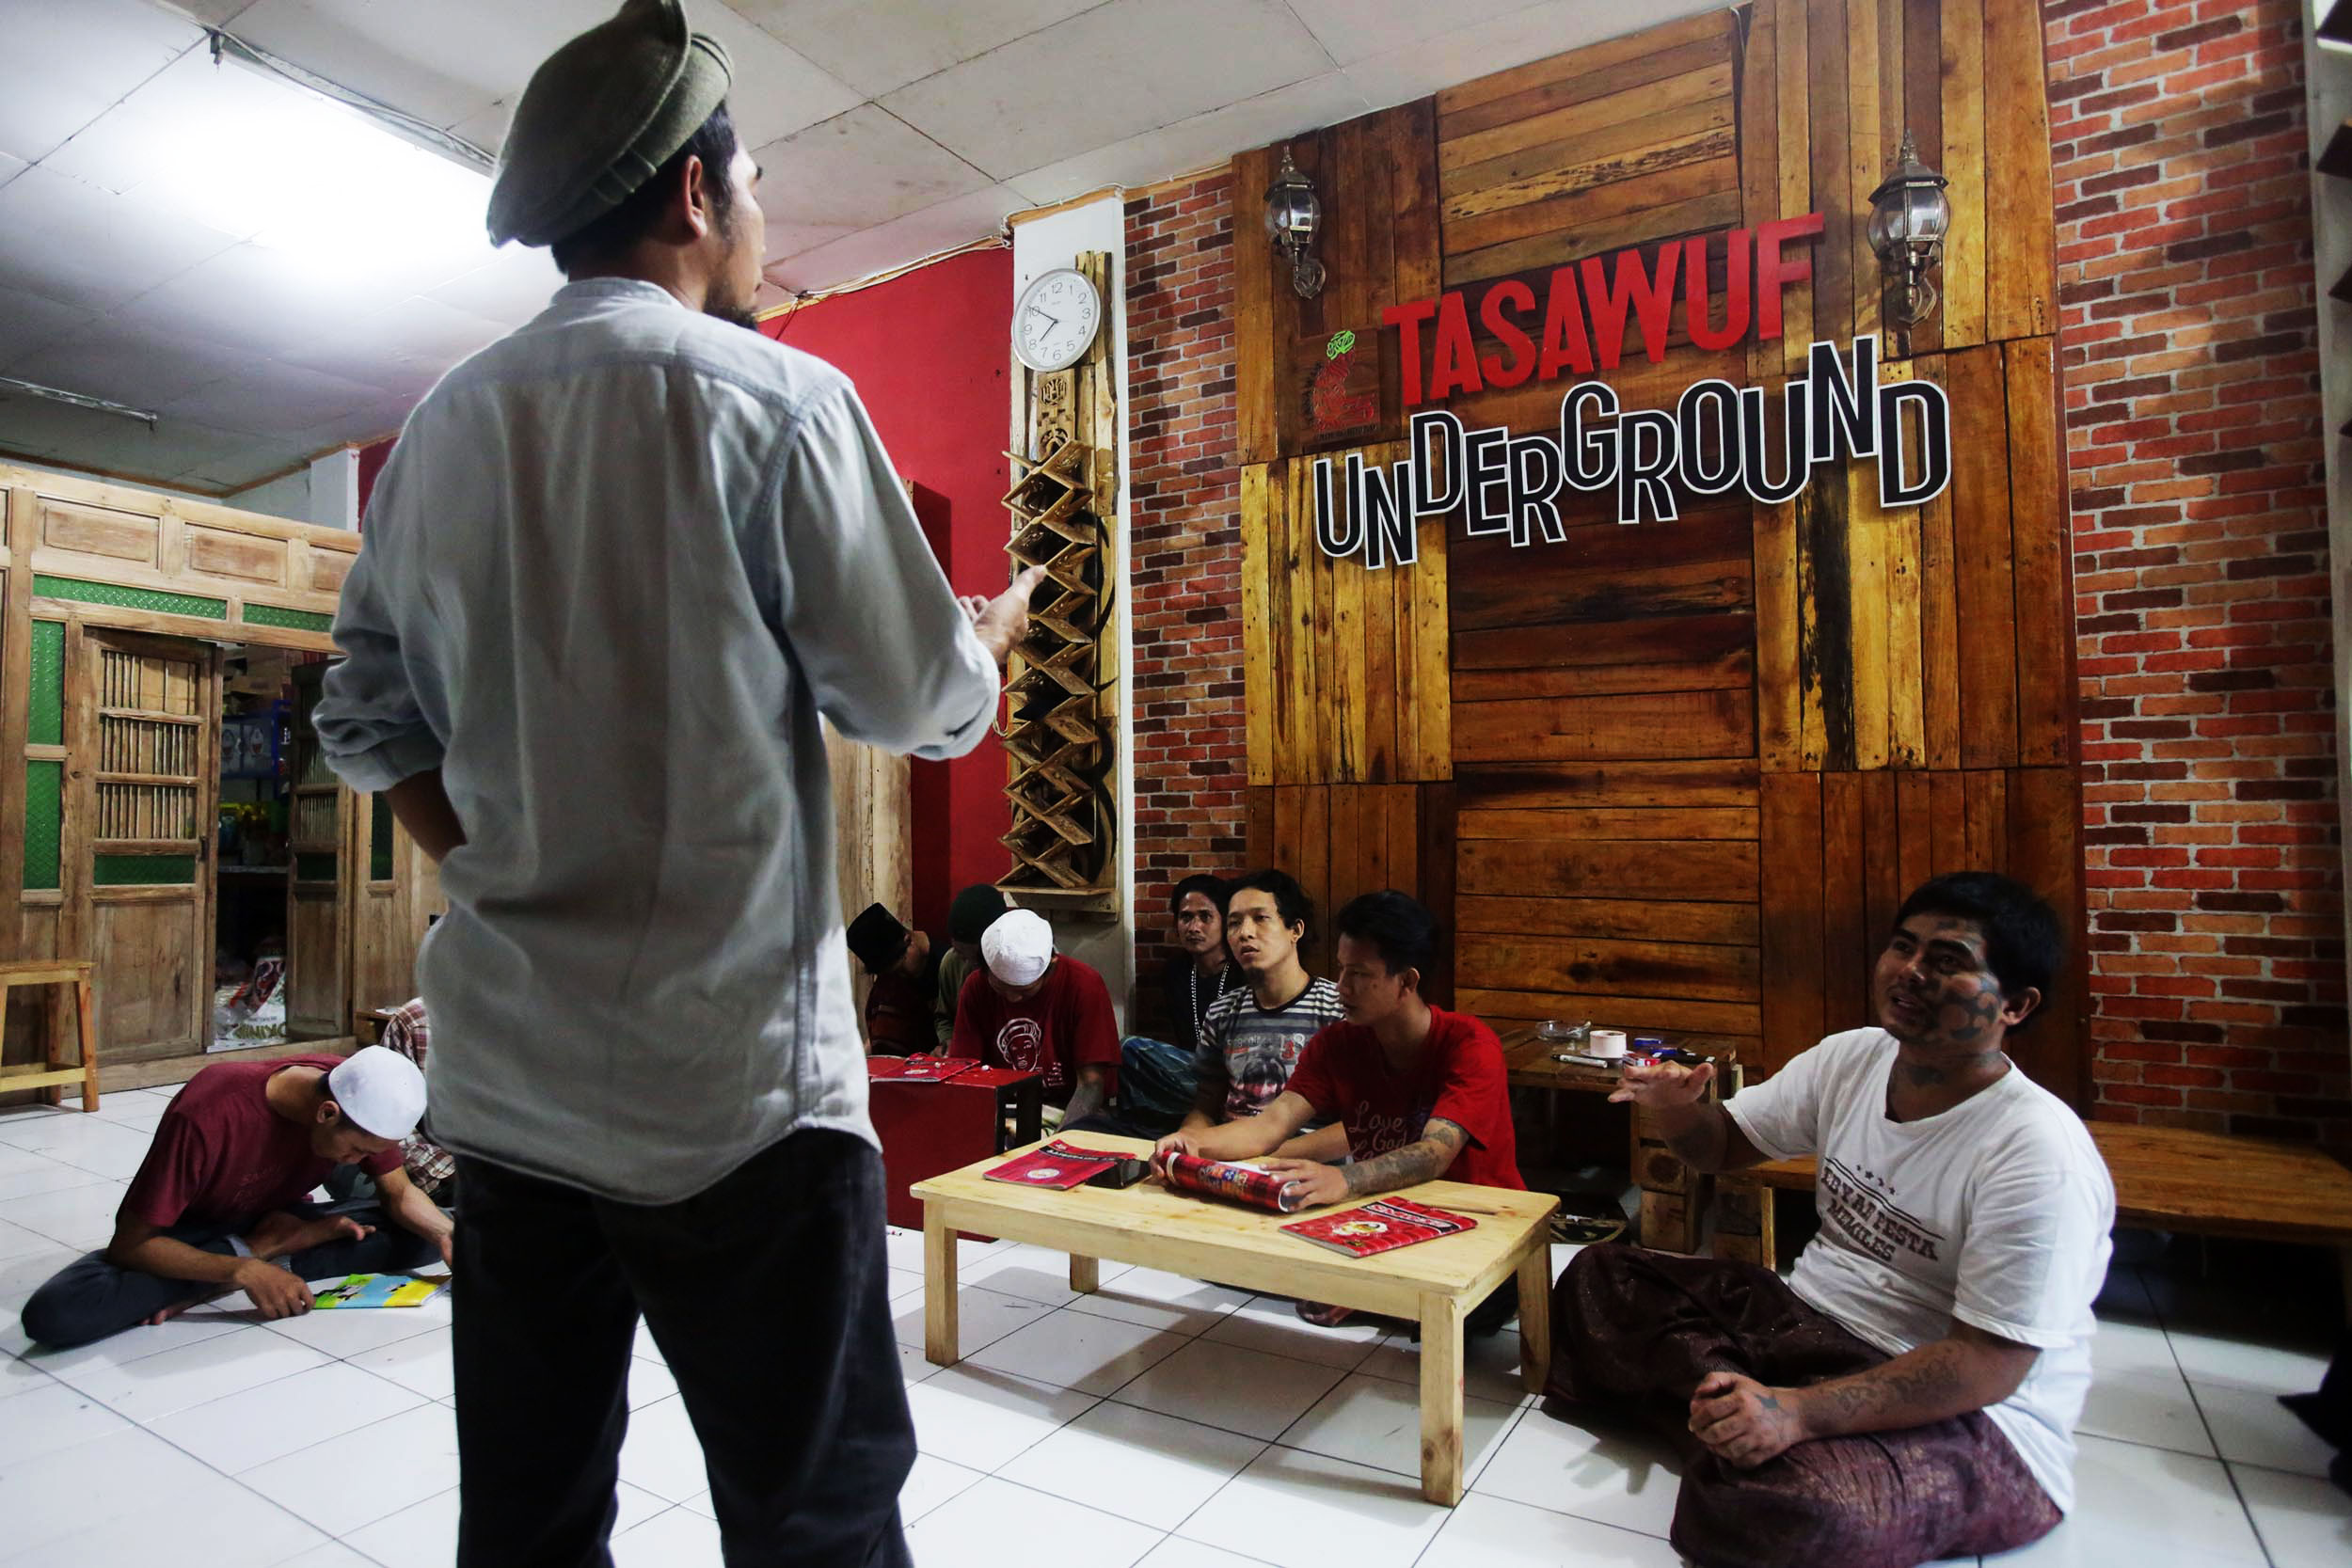 Tasawuf Underground